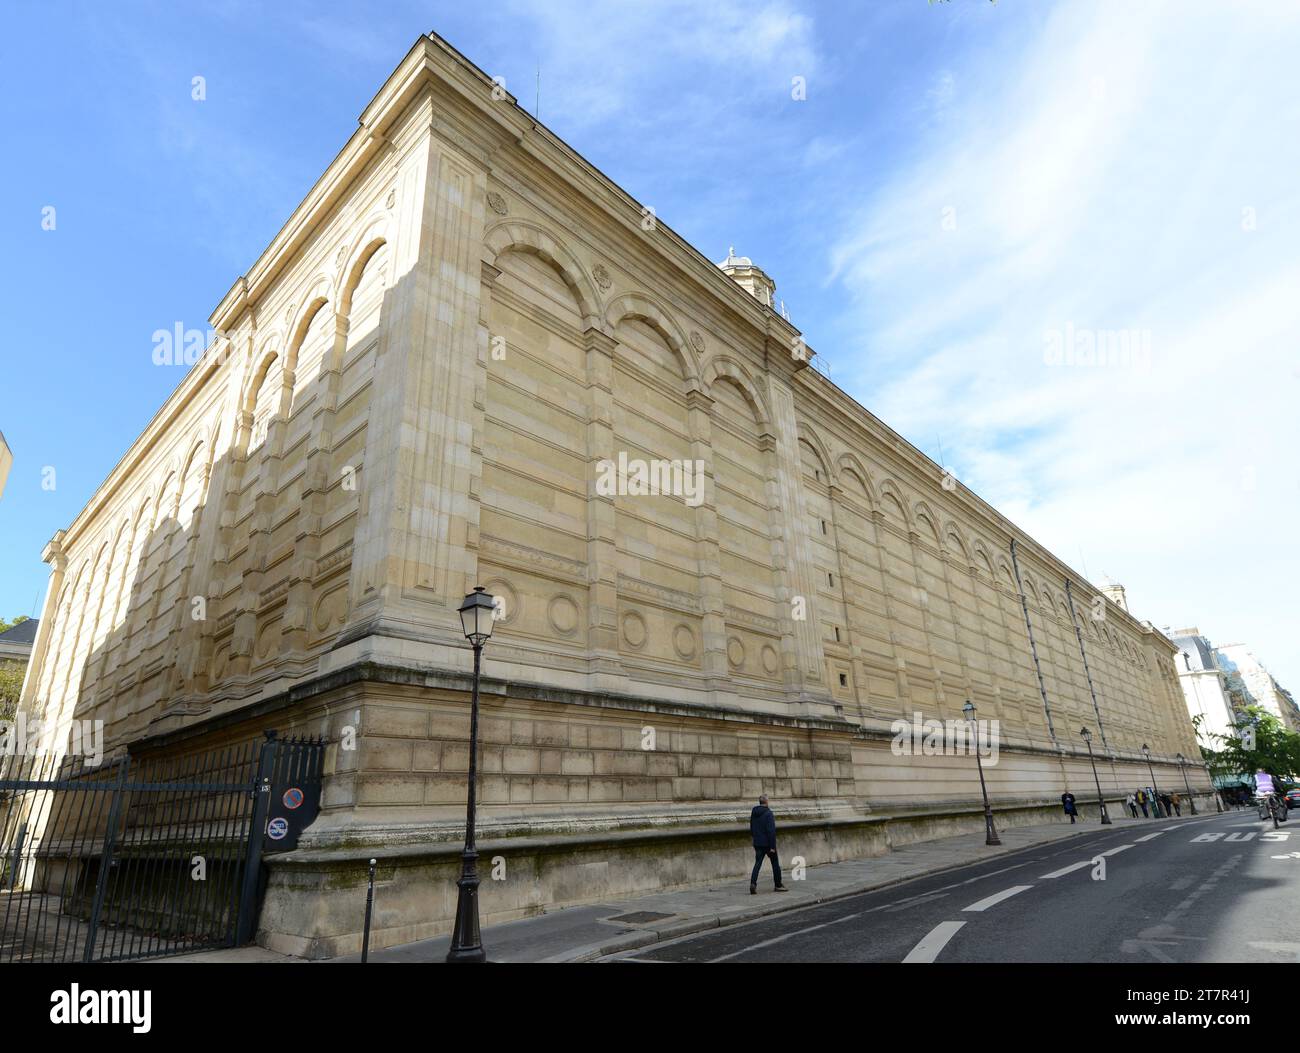 A large old building on Rue des Quatre-Fils in Paris, France. Stock Photo